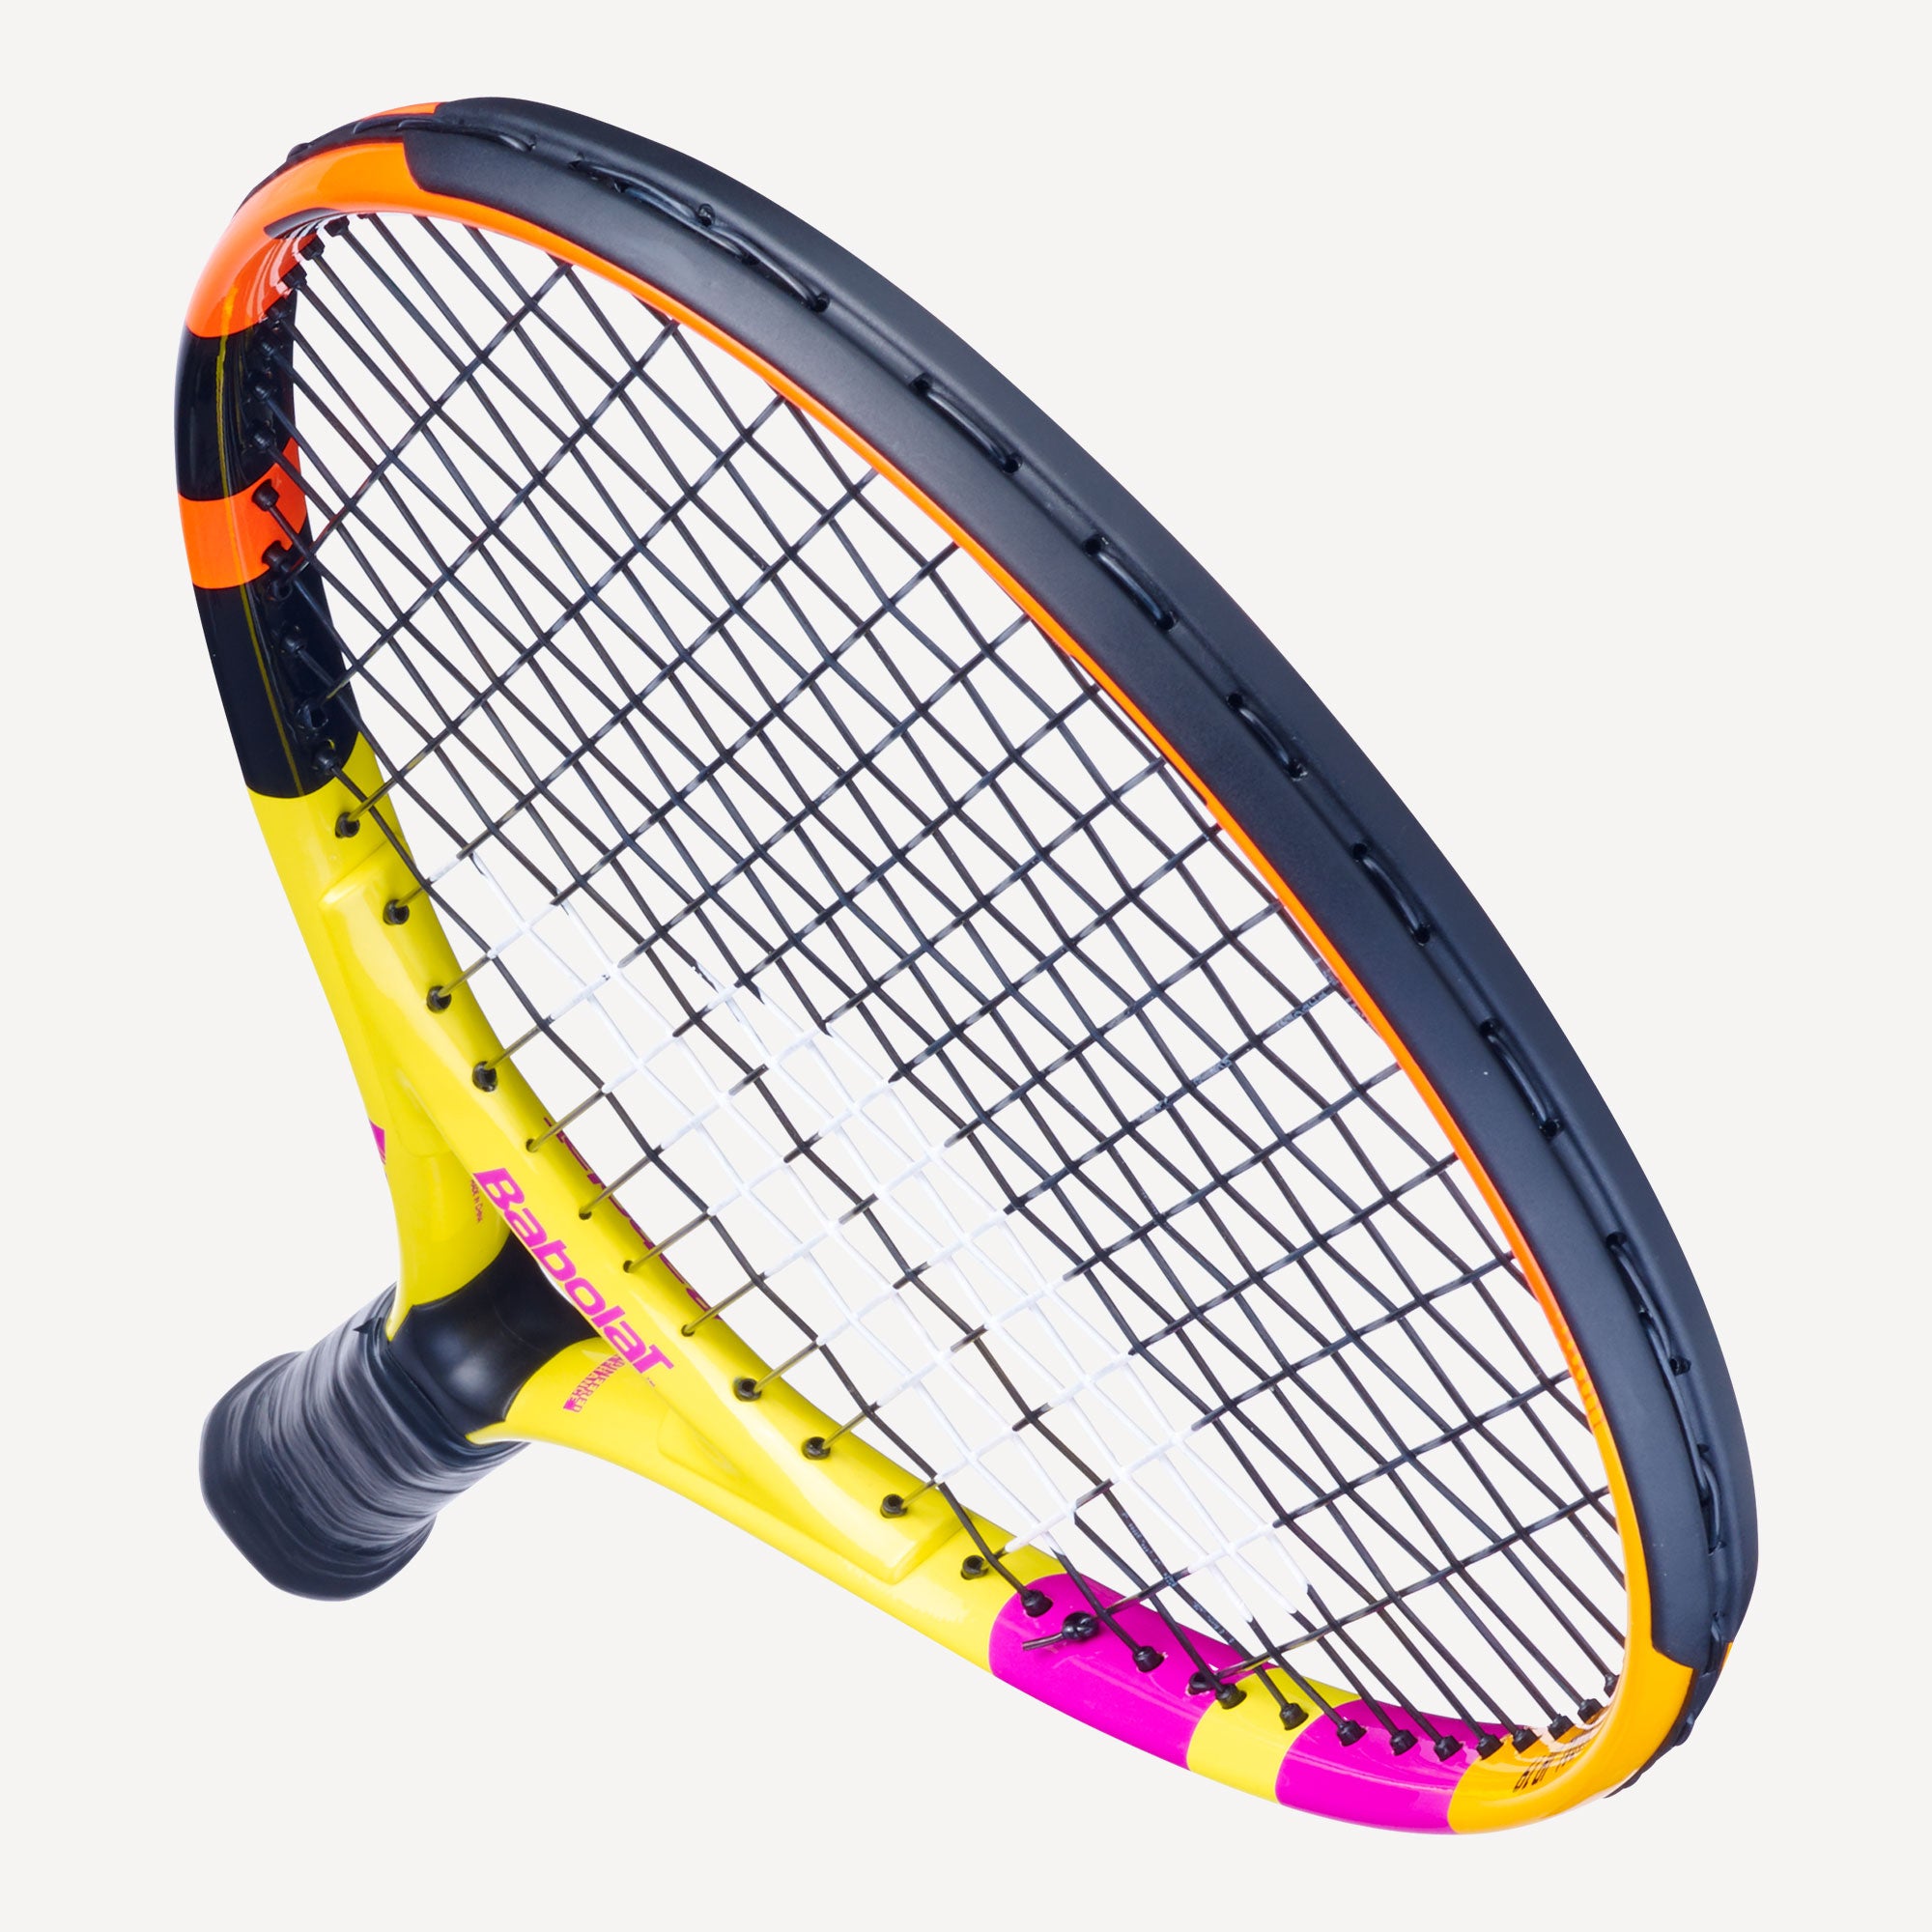 Babolat Rafa Nadal 19 Junior Tennis Racket 5